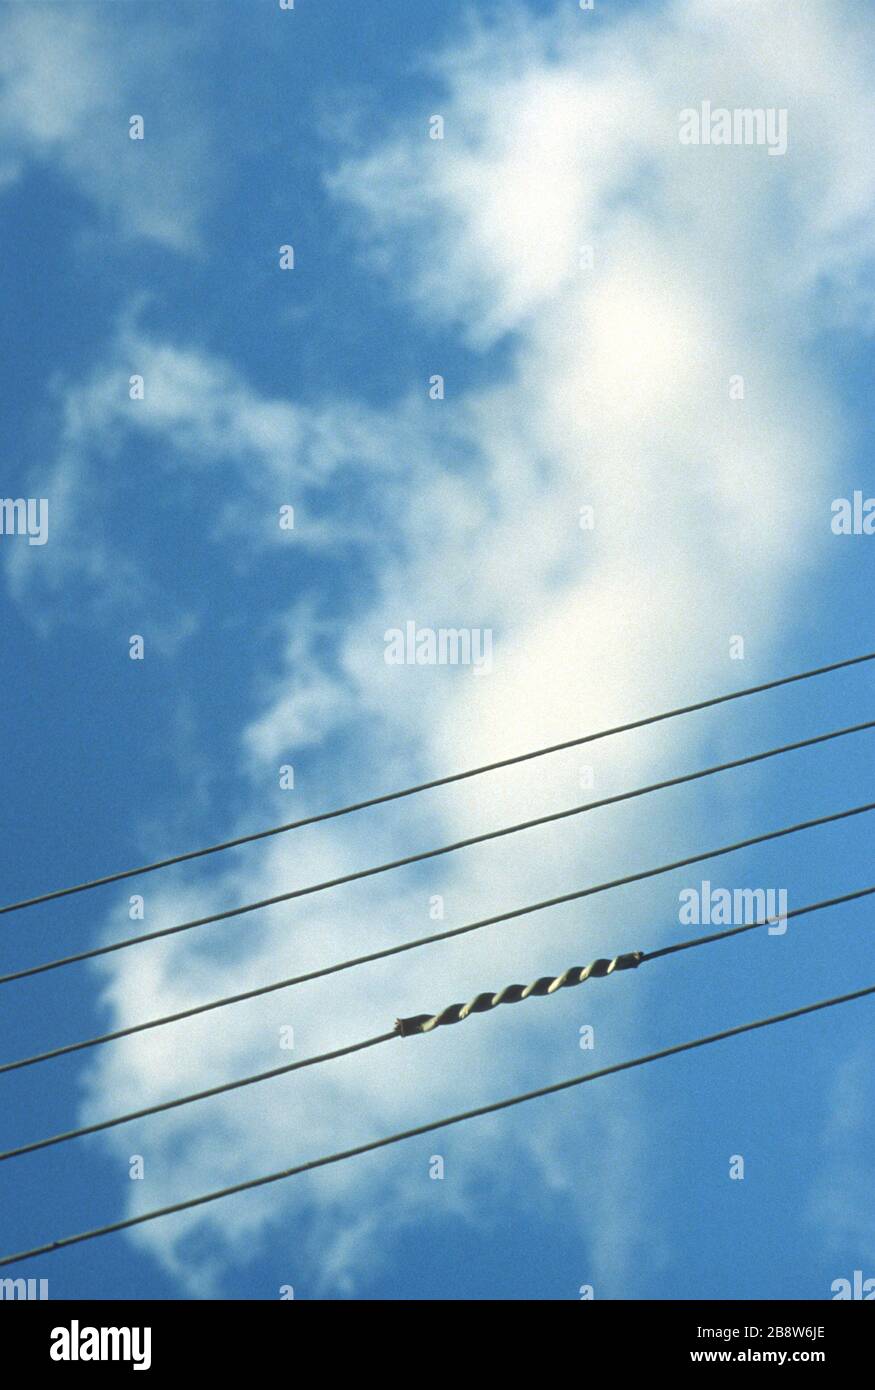 Fünf gegen einen blauen Himmel isolierte Telefon-/Strom-/Telegrafenleitungen sehen aus wie Musikstaven. Legen Sie Ihre eigenen Notizen in den Hintergrund. Stockfoto